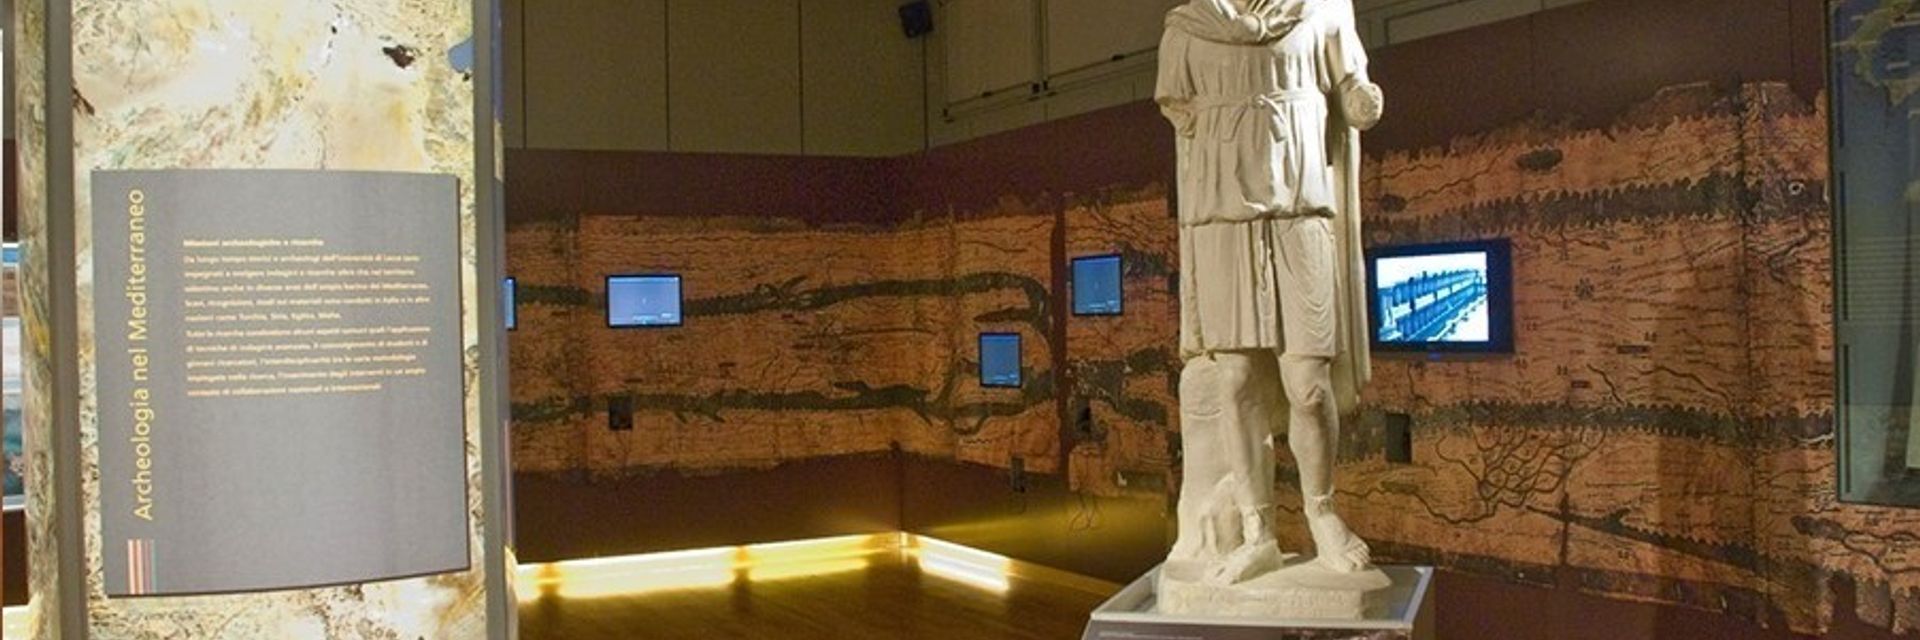  MUSA - Museo Storico-Archeologico dell’Università del Salento